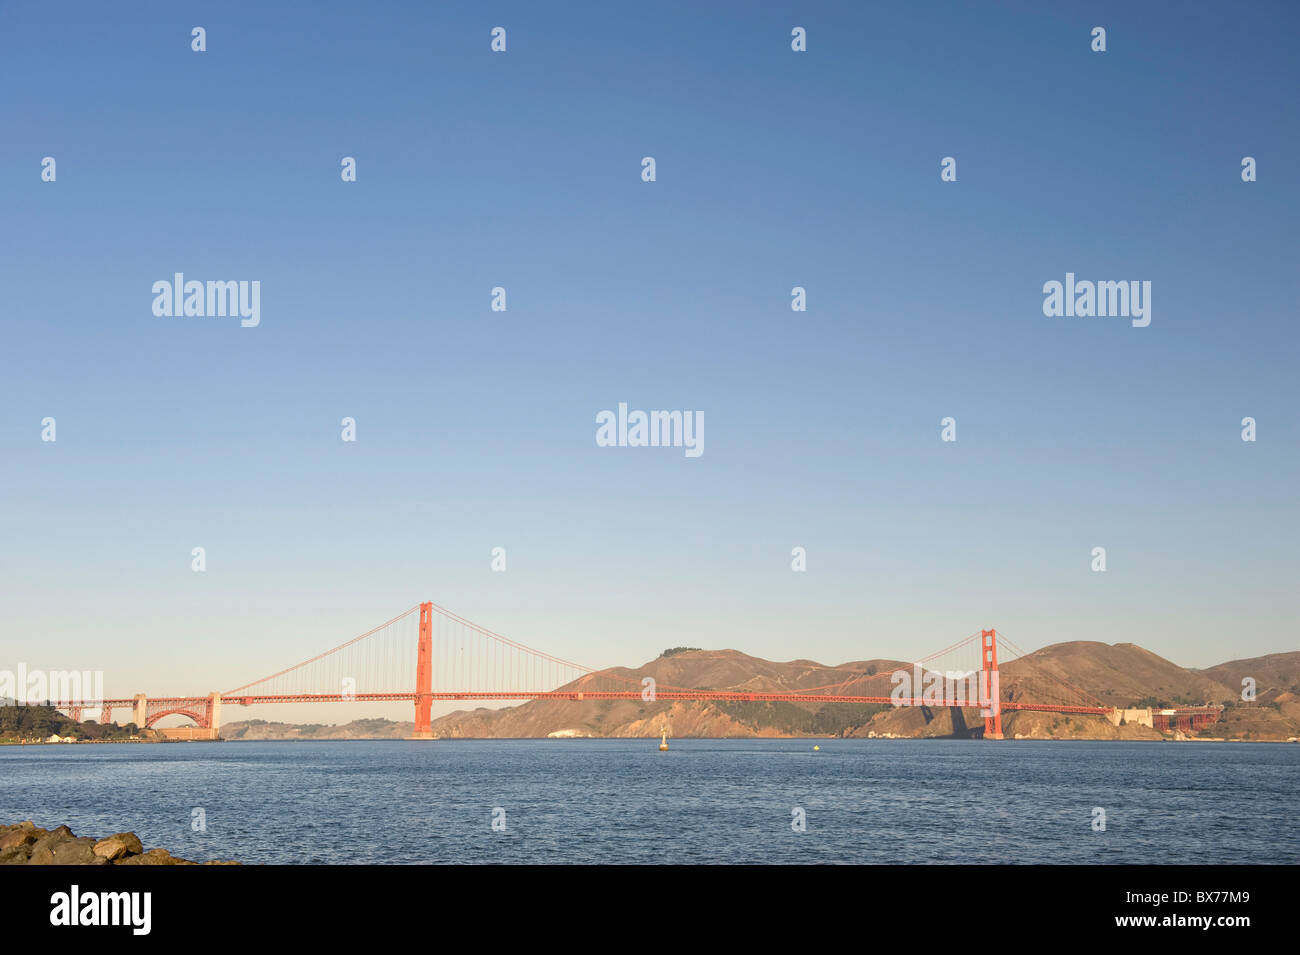 Usa, California, San Francisco, Golden Gate Bridge and Presidio Beach Park Stock Photo